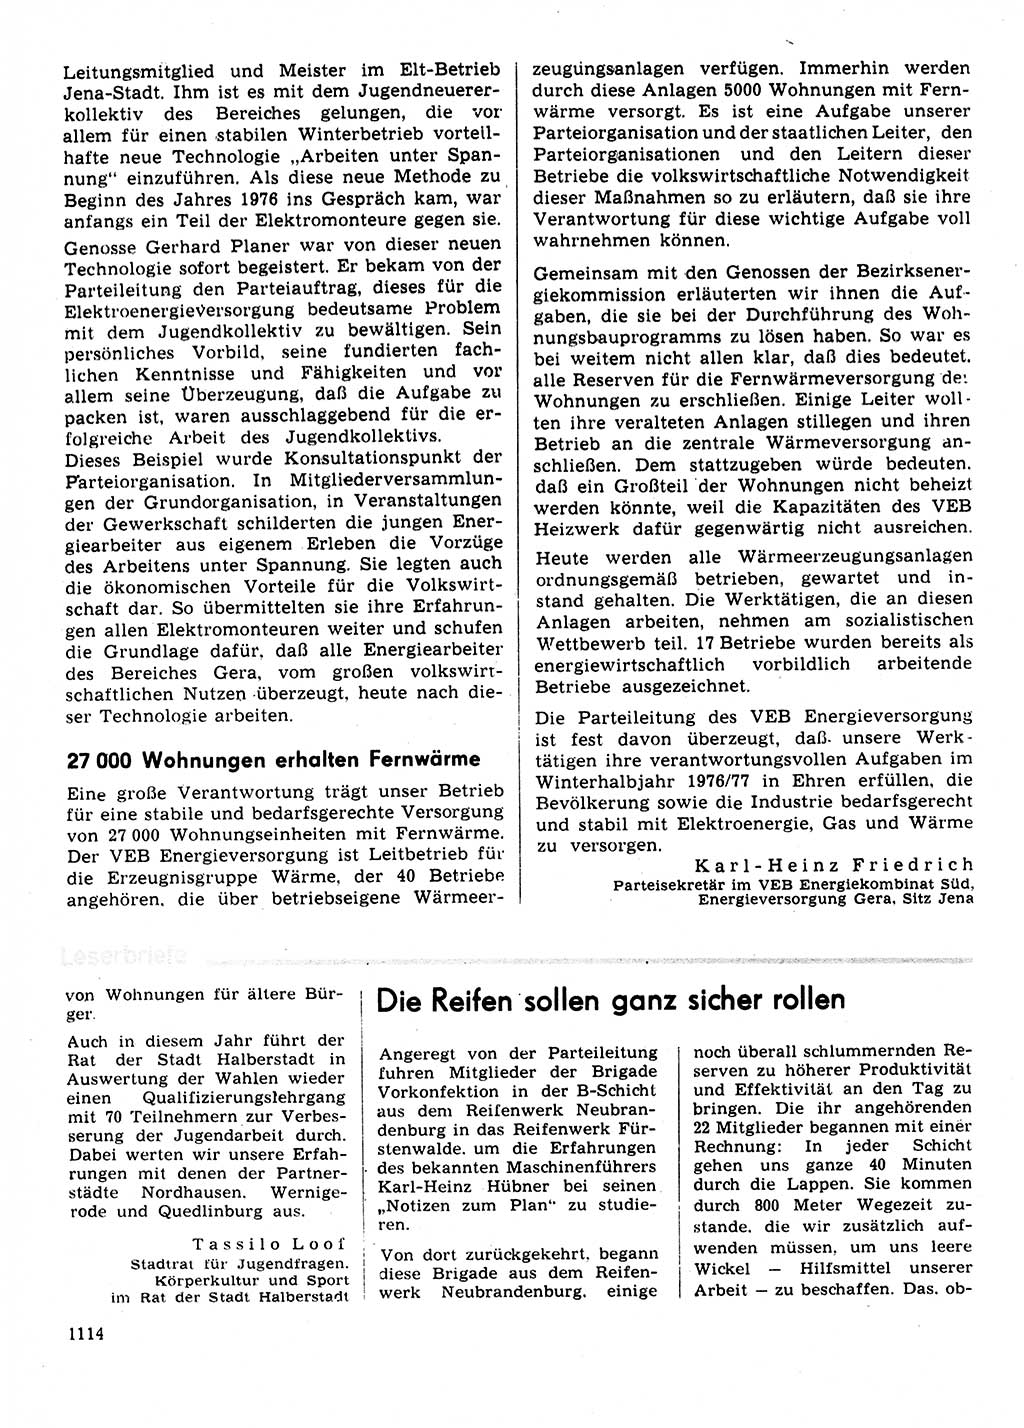 Neuer Weg (NW), Organ des Zentralkomitees (ZK) der SED (Sozialistische Einheitspartei Deutschlands) für Fragen des Parteilebens, 31. Jahrgang [Deutsche Demokratische Republik (DDR)] 1976, Seite 1114 (NW ZK SED DDR 1976, S. 1114)